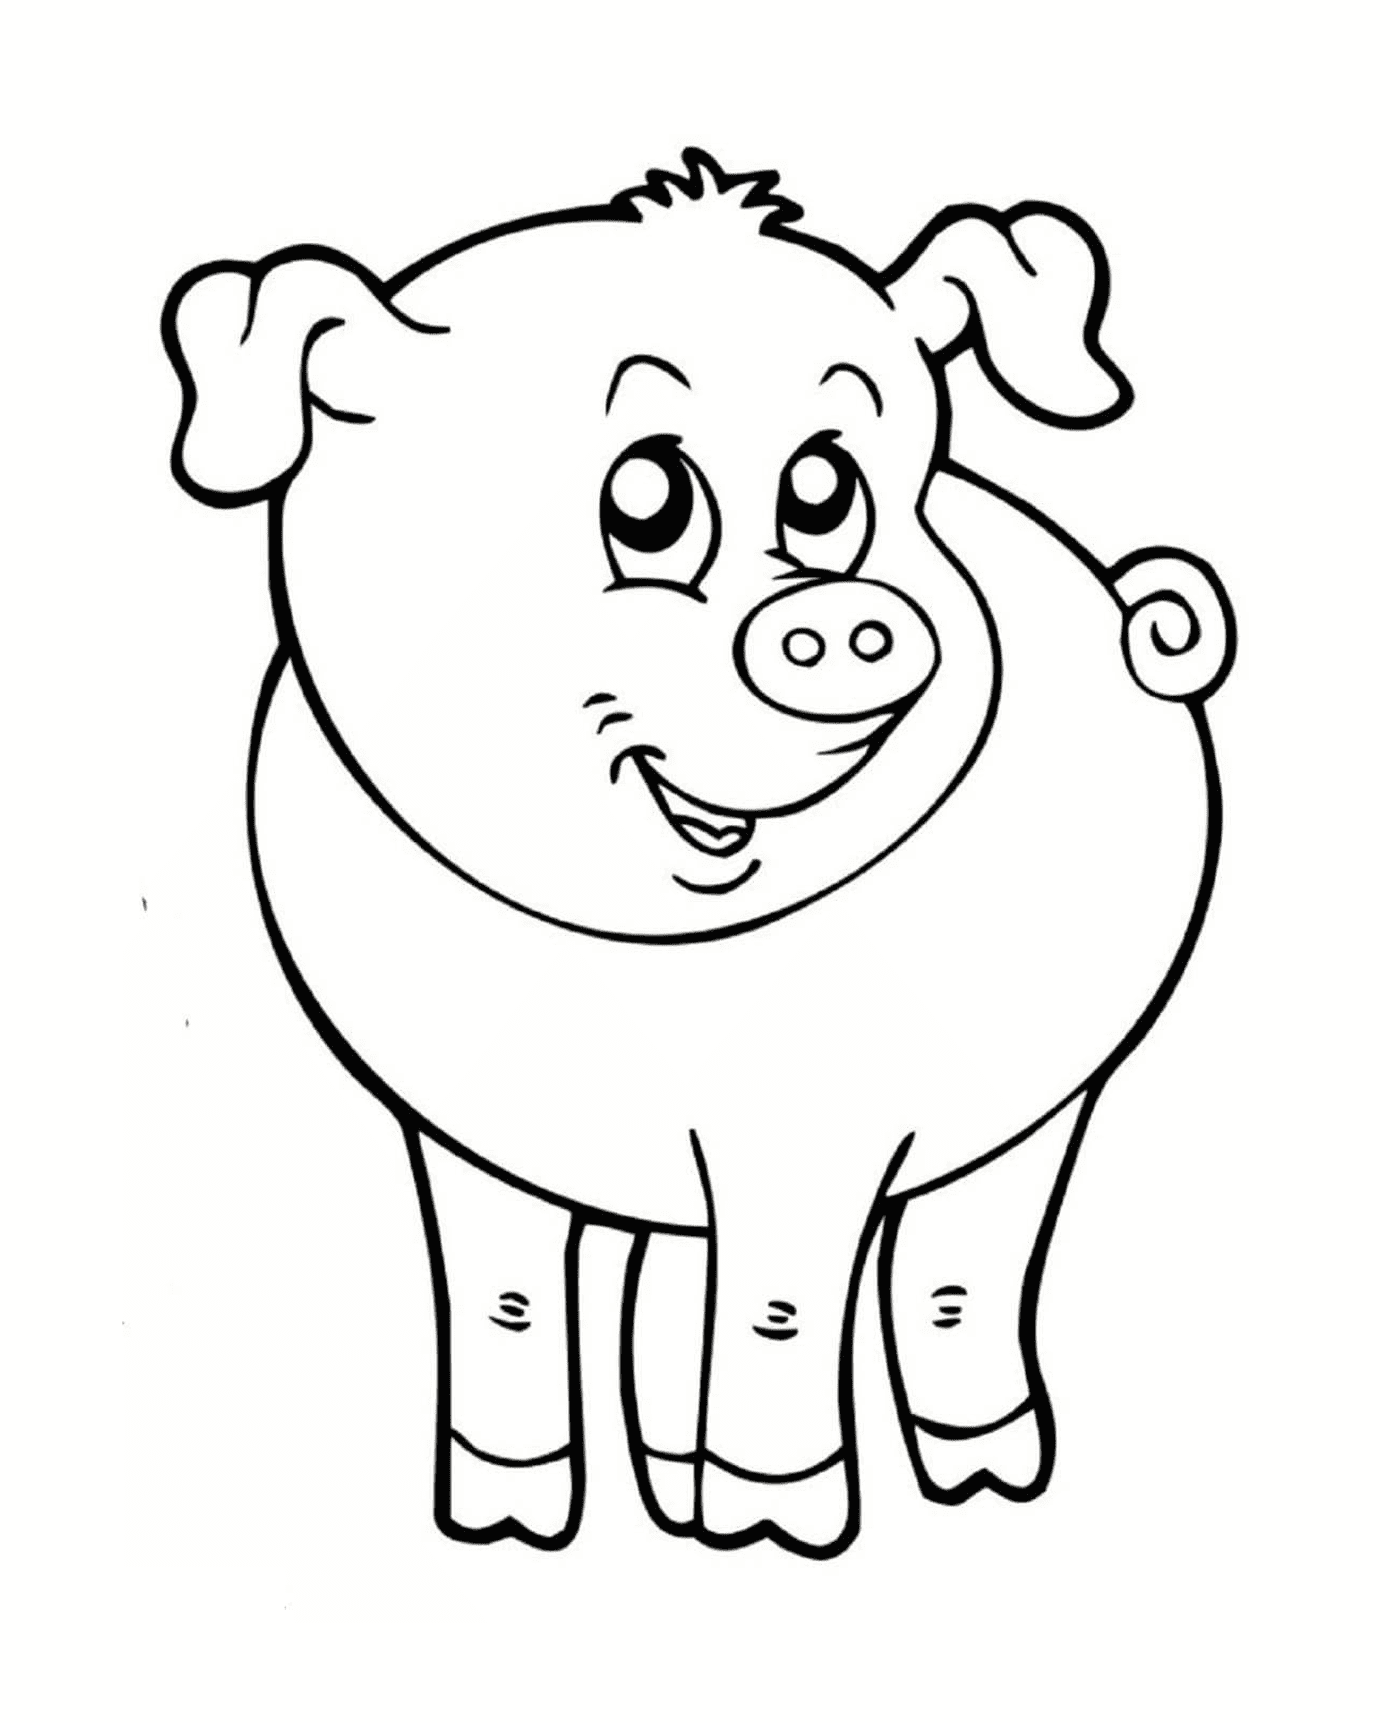  a smiling pig 